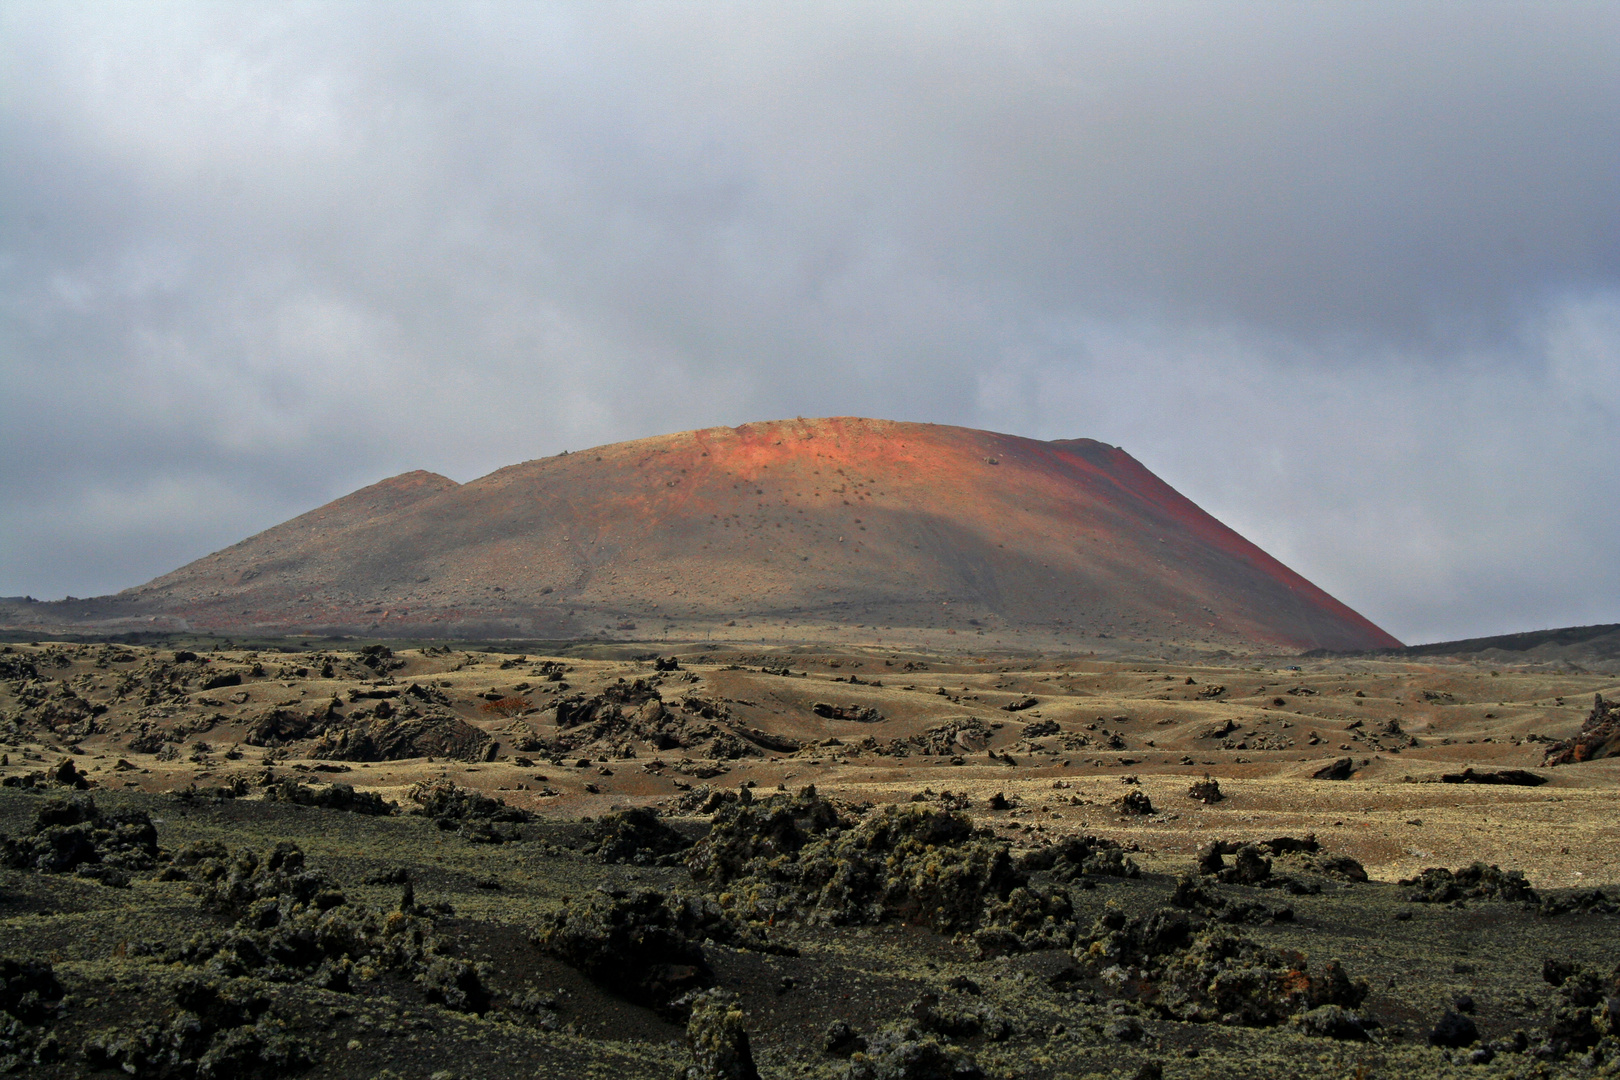 Los Volcanes Natural Park - 2014 (3)